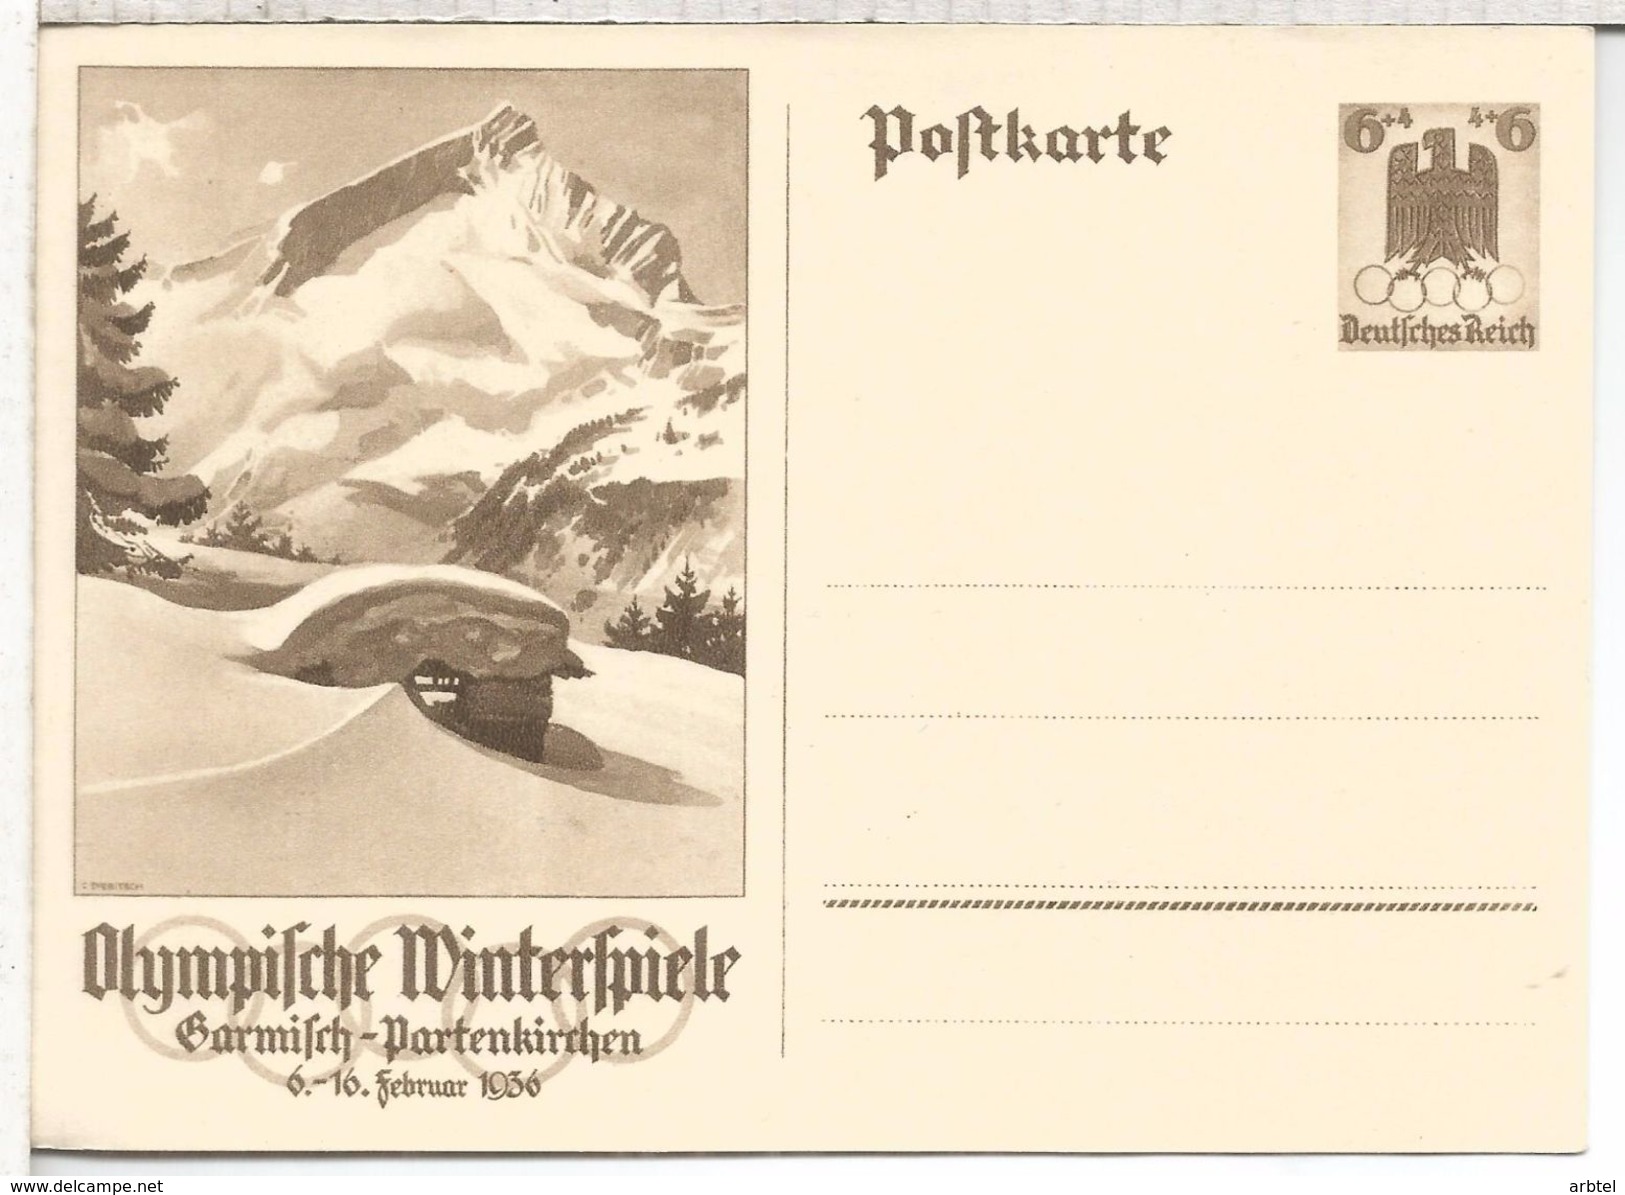 ALEMANIA REICH ENTERO POSTAL JUEGOS OLIMPICOS DE INVIERNO GARMISCH PARTENKIRCHEN - Inverno1936: Garmisch-Partenkirchen